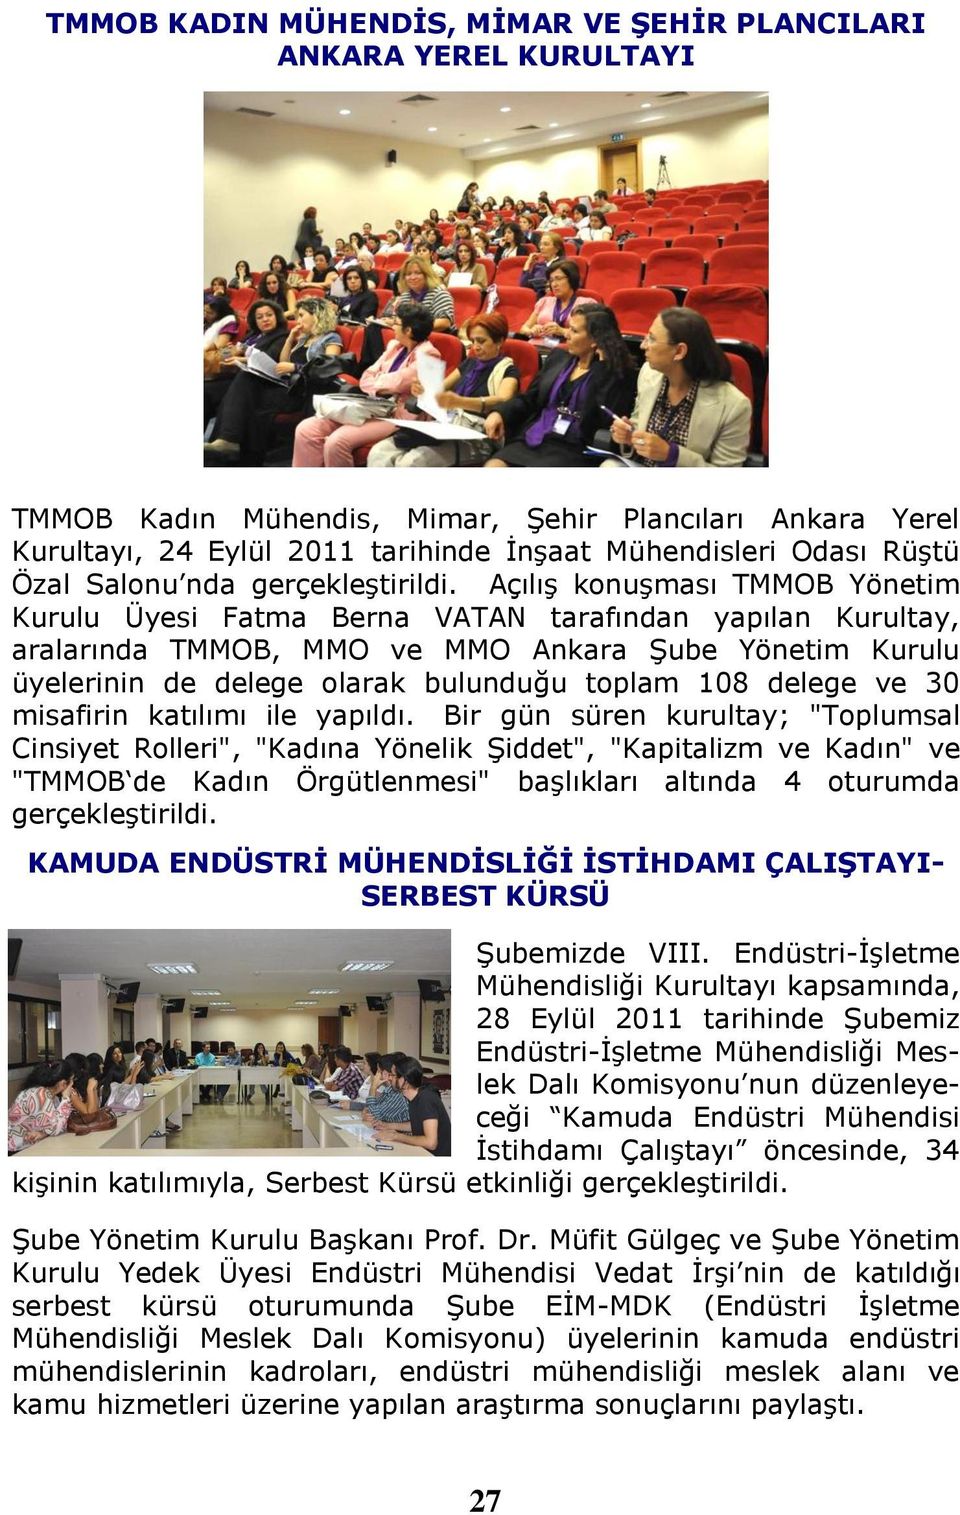 Açılış konuşması TMMOB Yönetim Kurulu Üyesi Fatma Berna VATAN tarafından yapılan Kurultay, aralarında TMMOB, MMO ve MMO Ankara Şube Yönetim Kurulu üyelerinin de delege olarak bulunduğu toplam 108